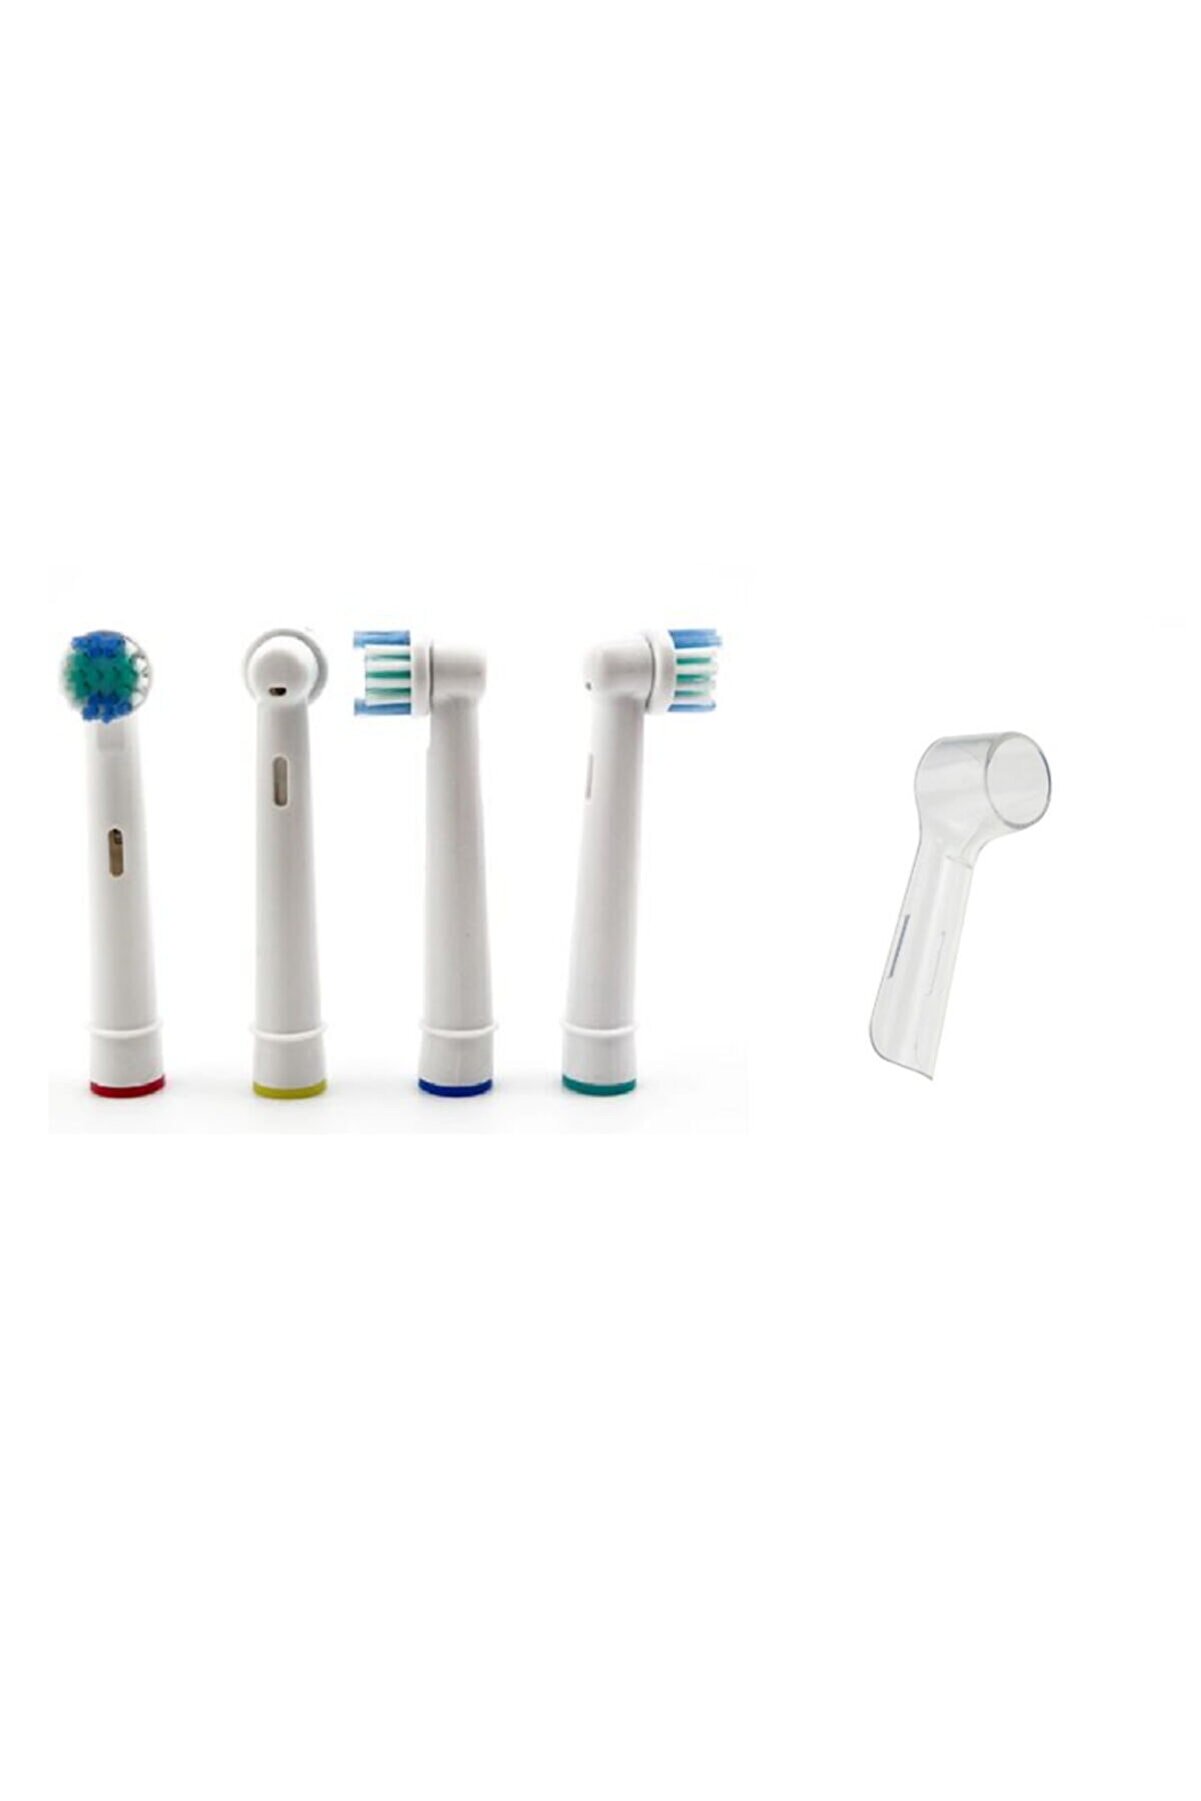 Oral-B Oral - B Şarjlı Ve Pilli Diş Fırçaları Ile Uyumlu 4 Adet Muadil Yedek Başlık + 1 Adet Koruyucu Kapak